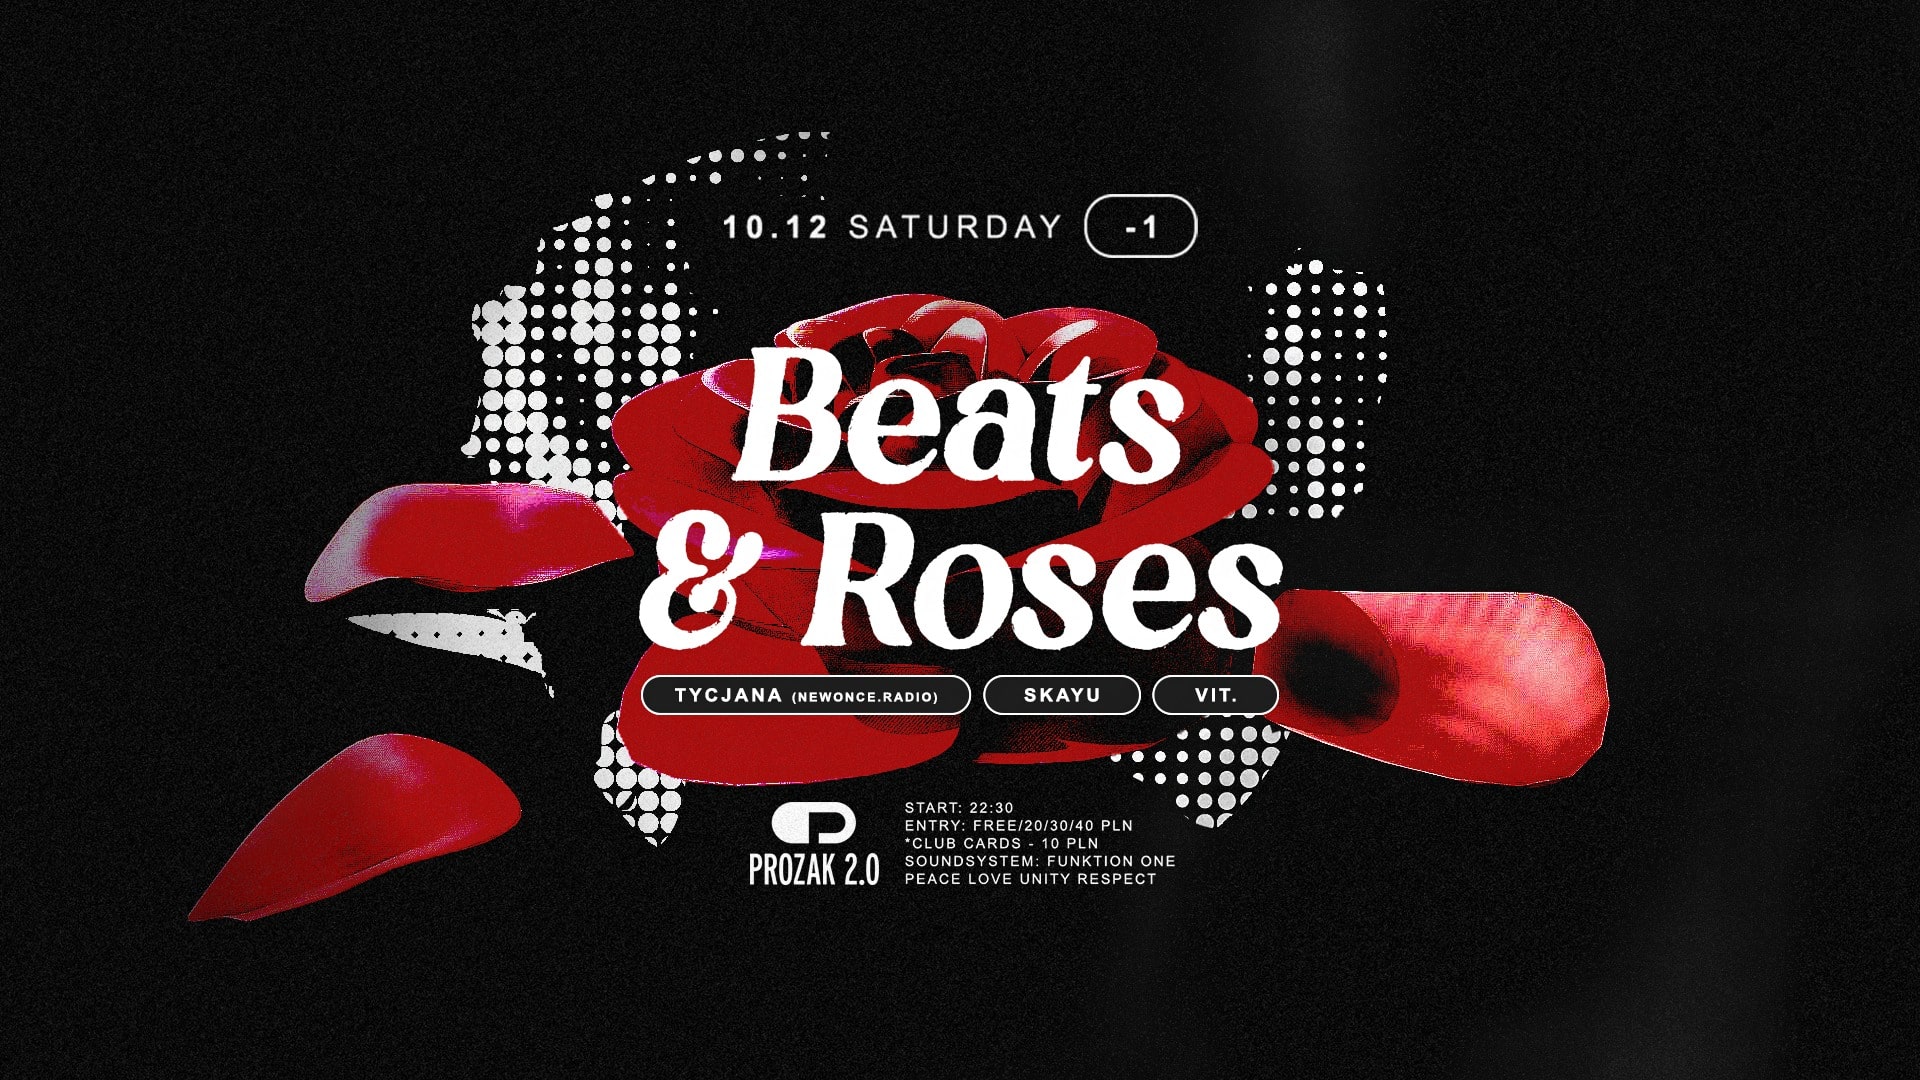 Beats & Roses feat. Tycjana (newonce.radio) x Prozak 2.0